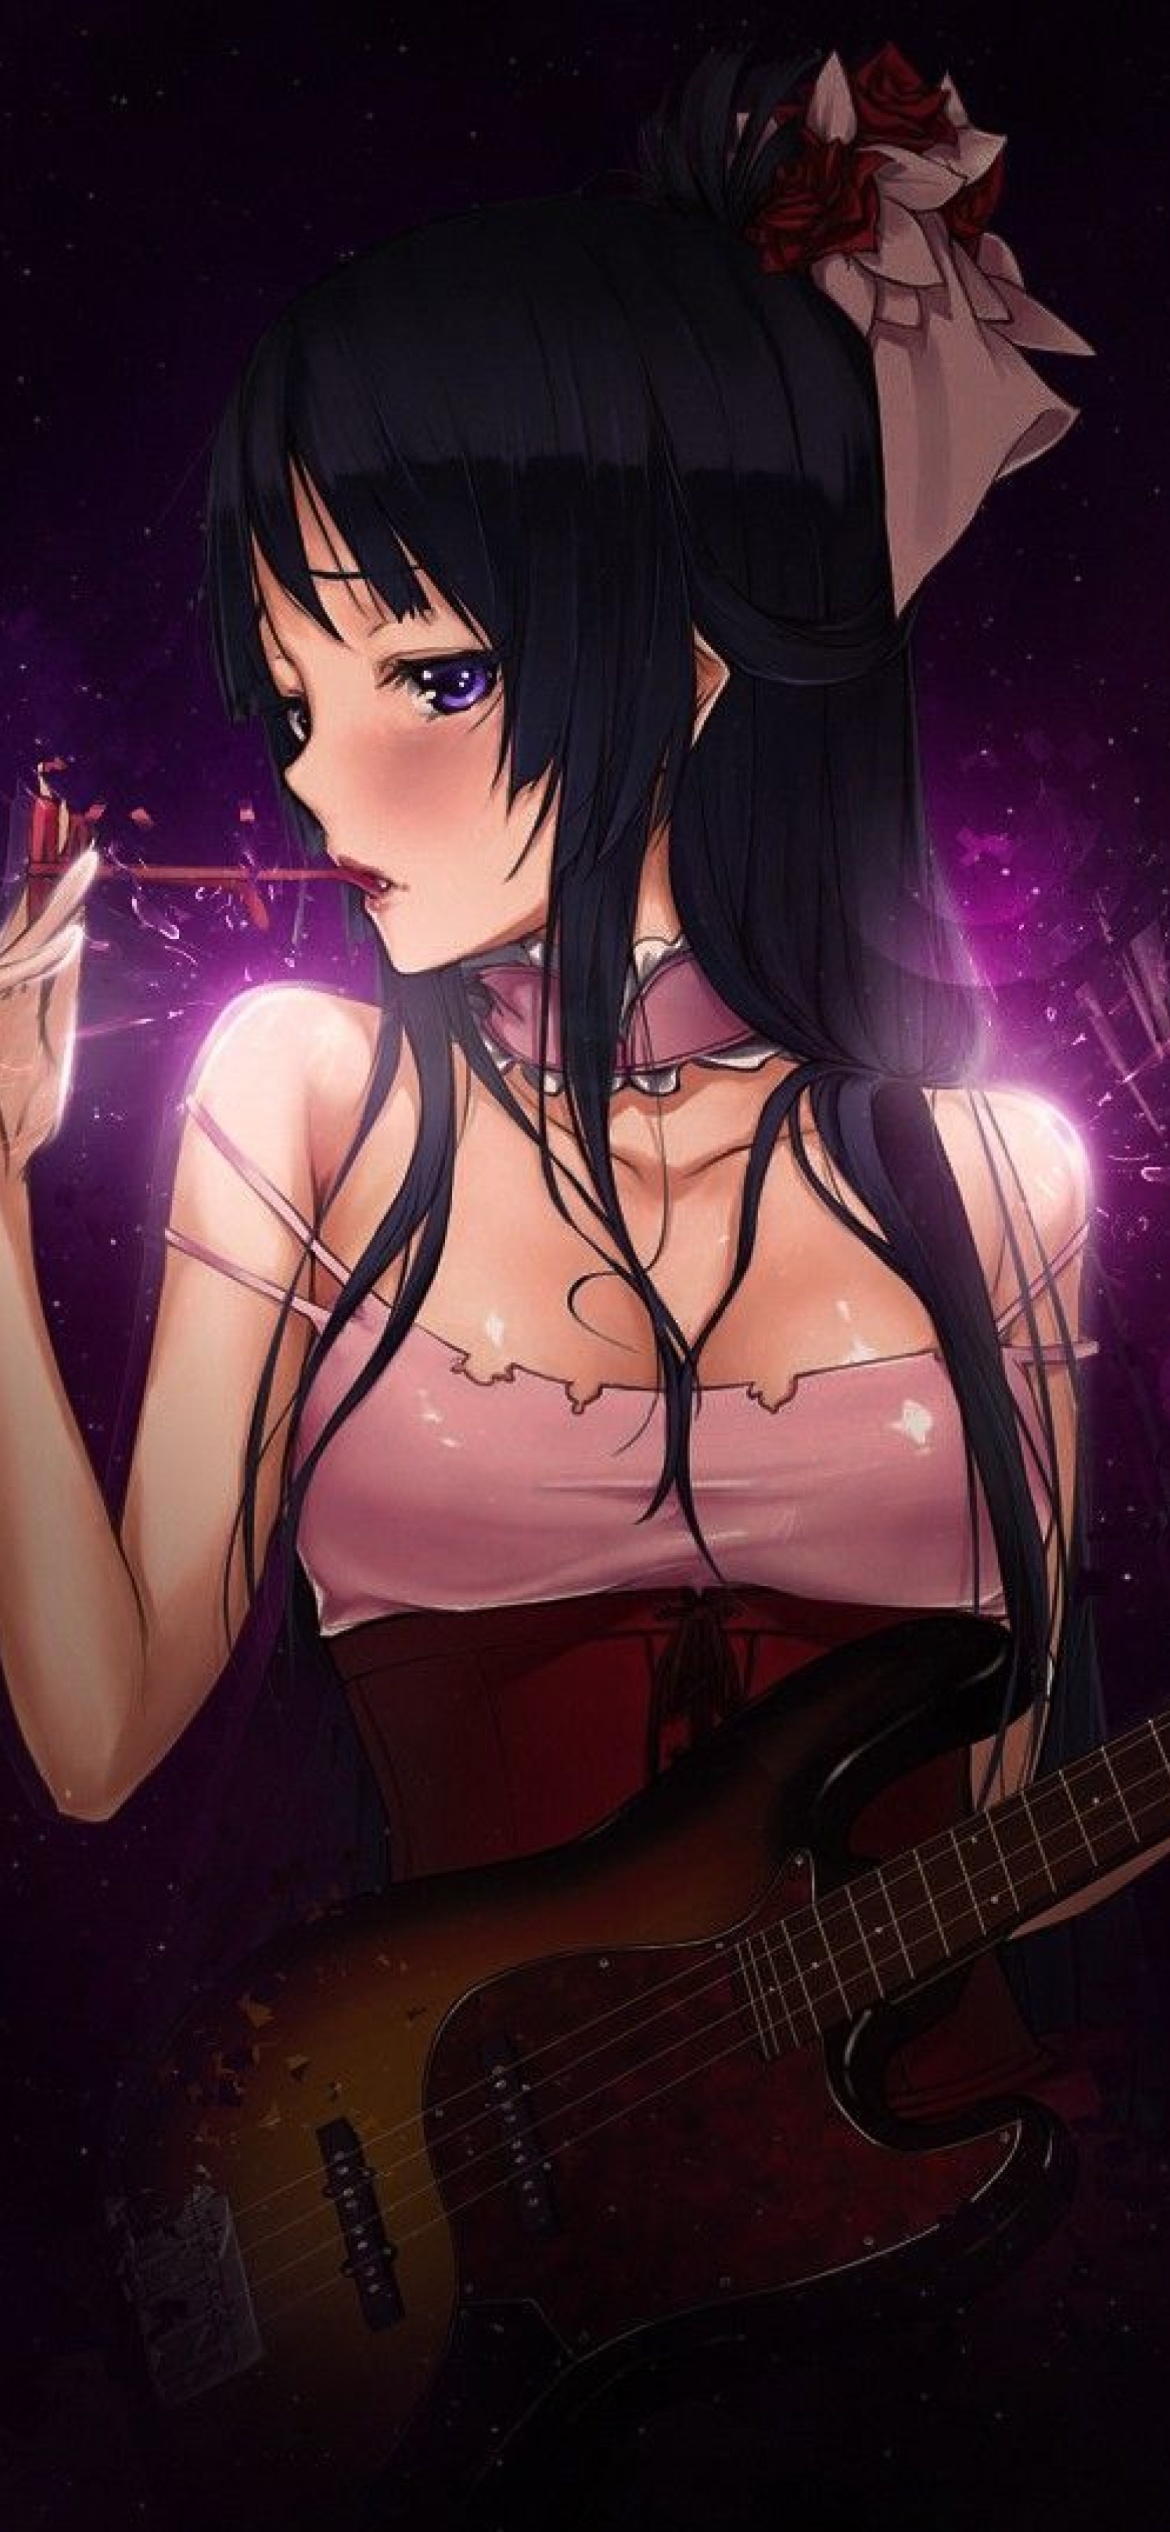 Fondo de pantalla Anime Girl with Guitar 1170x2532